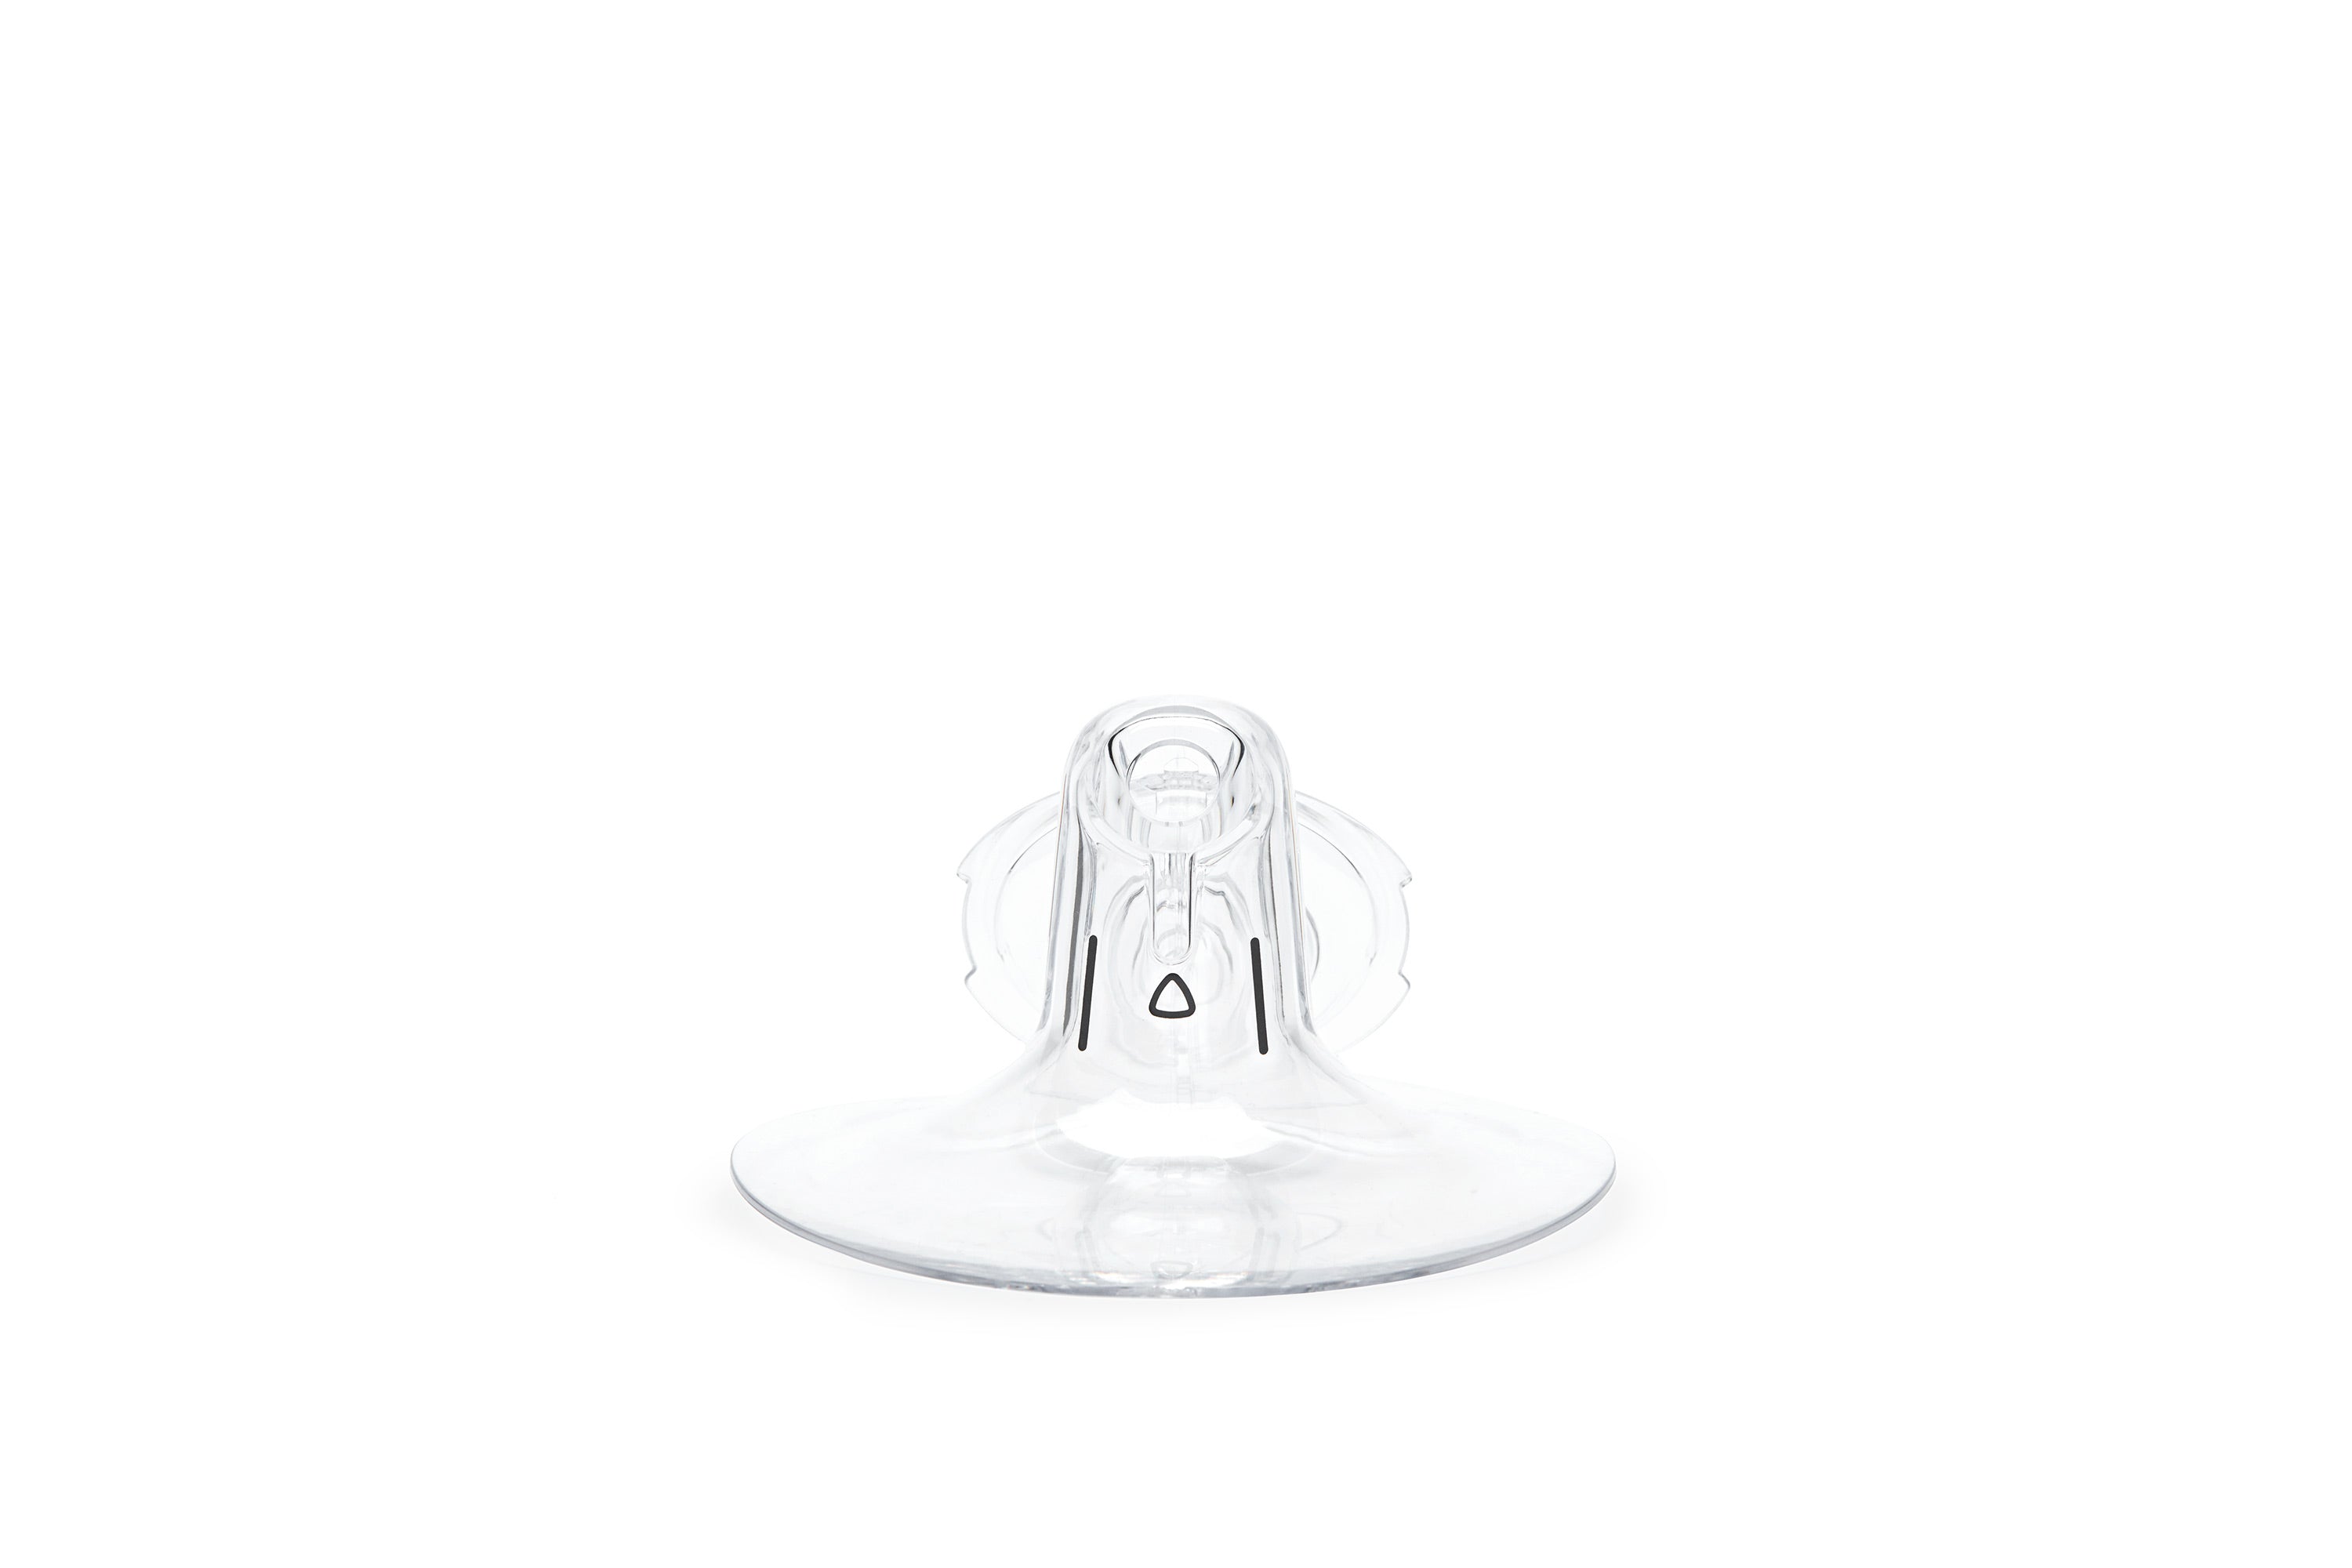 Elvie Pump 24mm Breast Shield (2 pack) Clear EP01-PUA-BSM02 - Best Buy